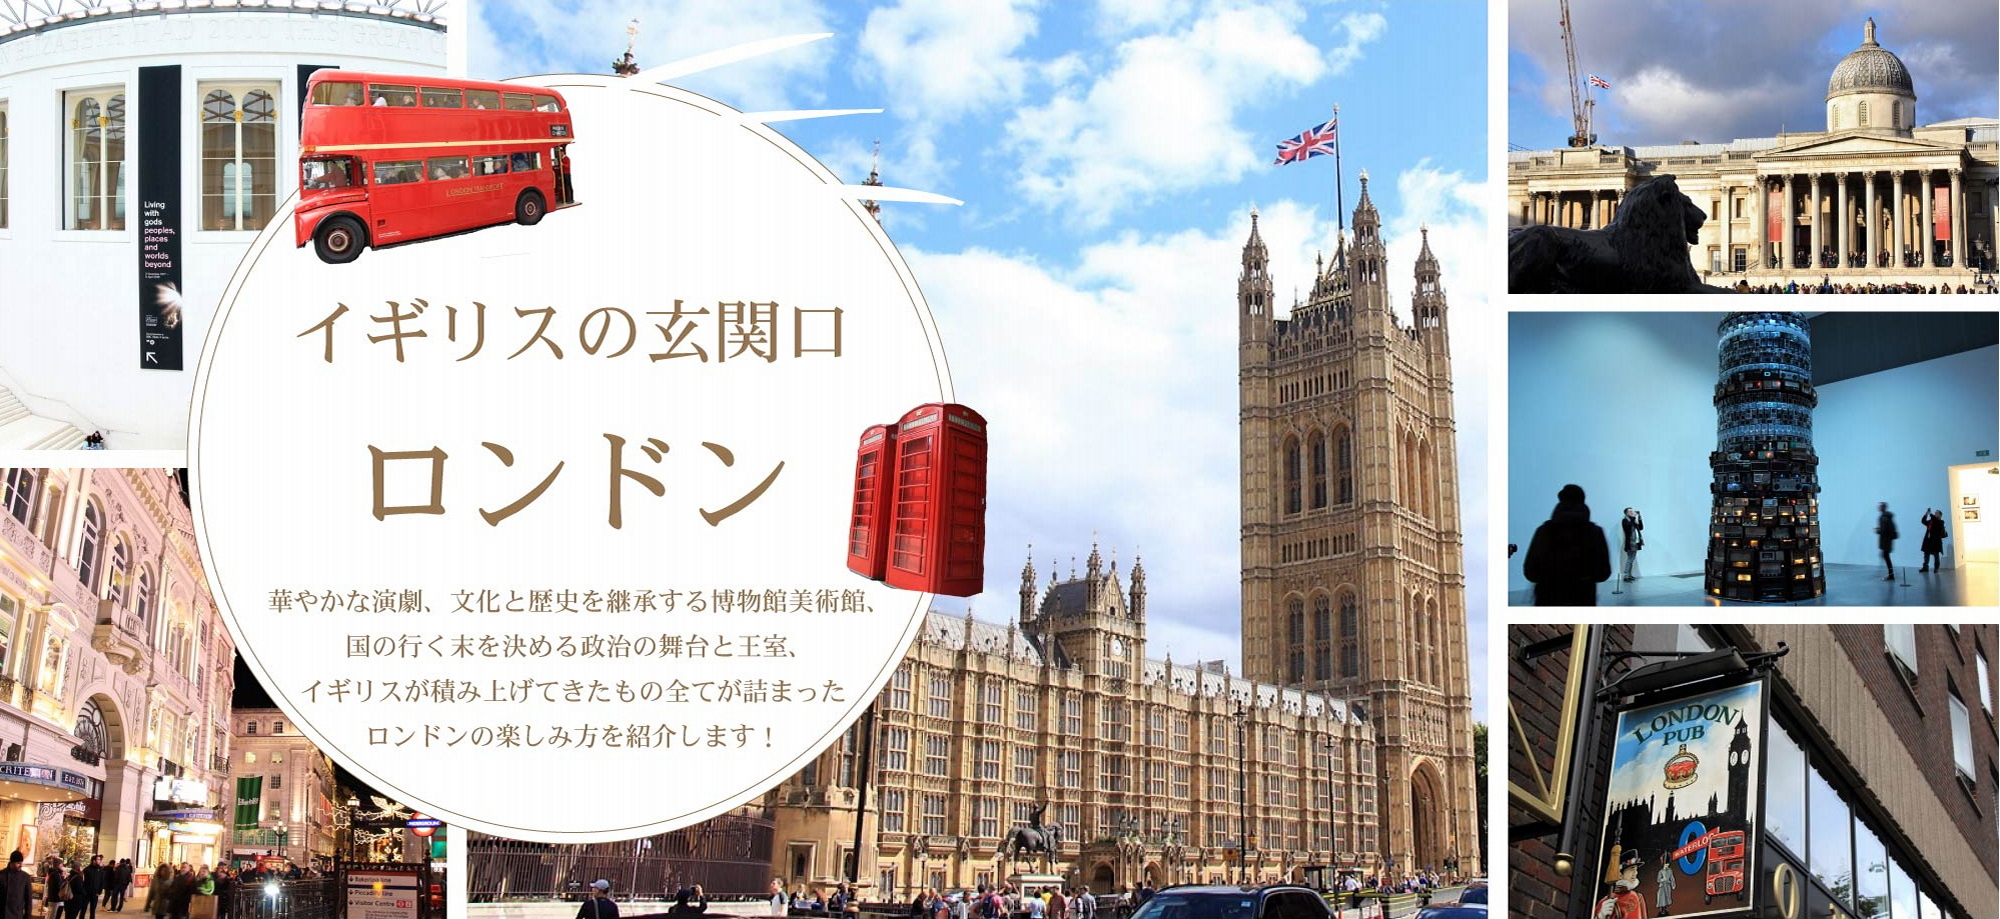 ロンドン Uk Trip ユートリ イギリス初心者のための旅行観光 留学情報メディア